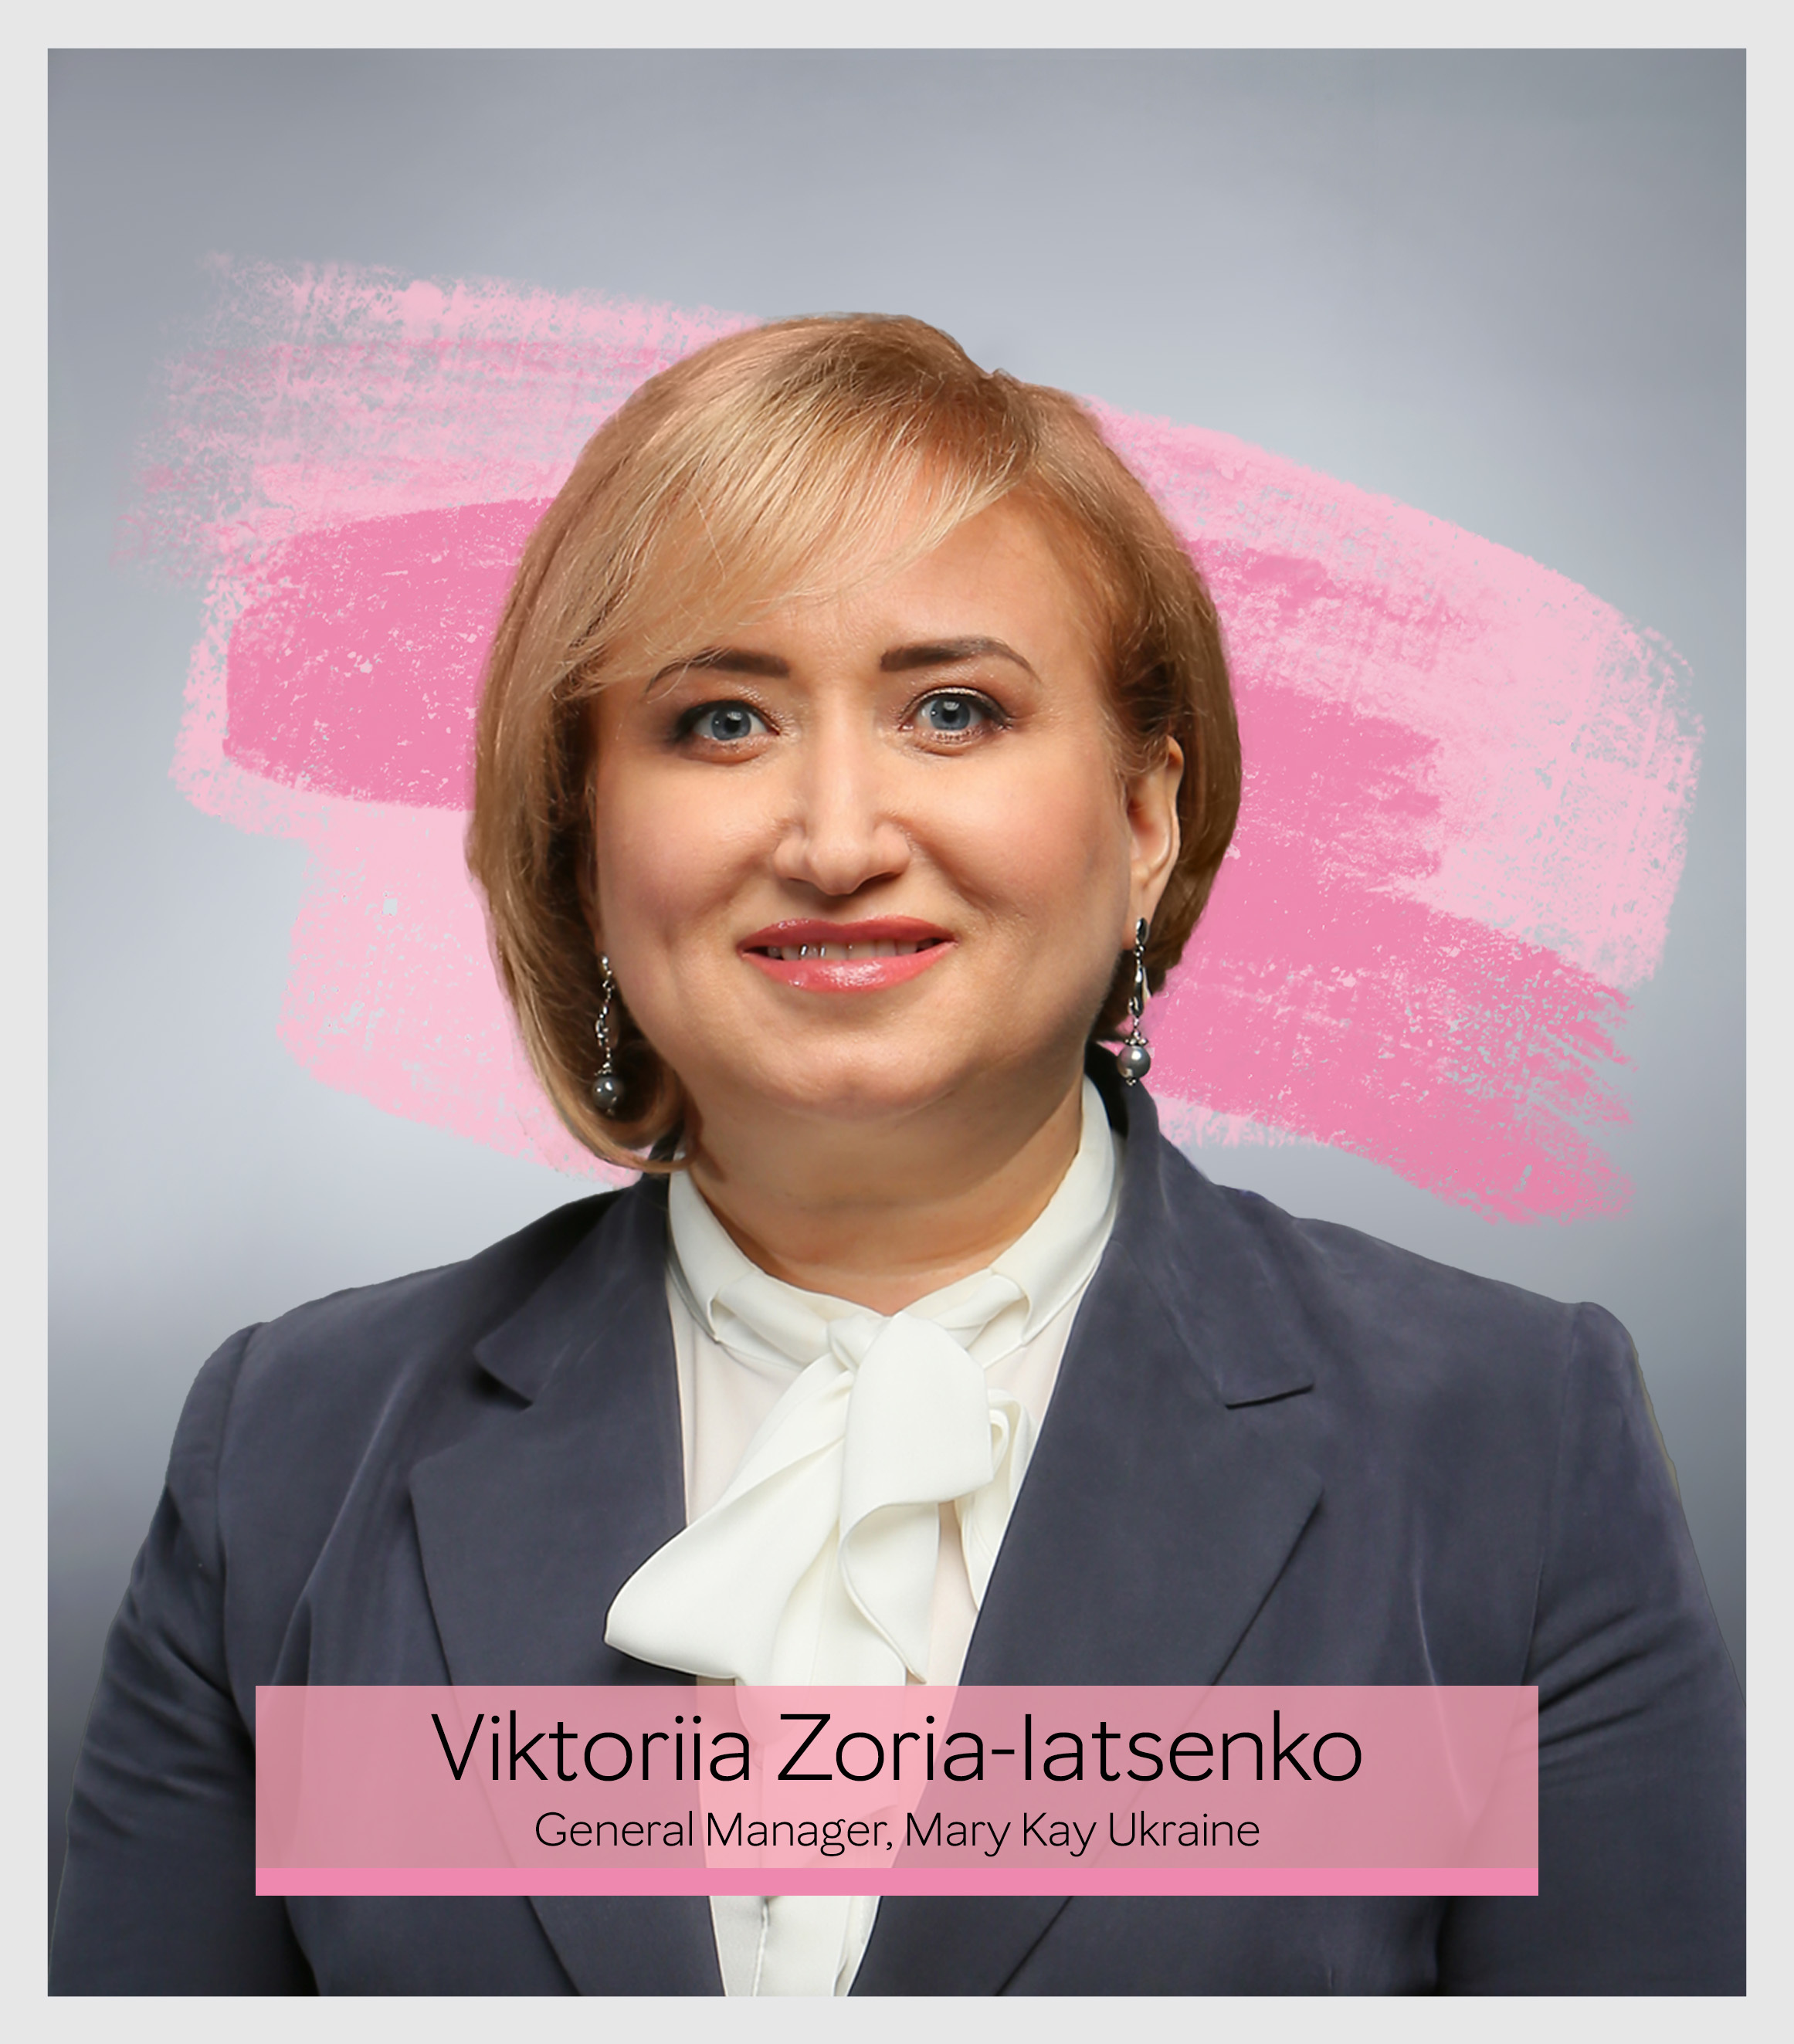 Viktoriia Zoria-Iatsenko, General Manager, Mary Kay Ukraine (Photo: Mary Kay Inc.)